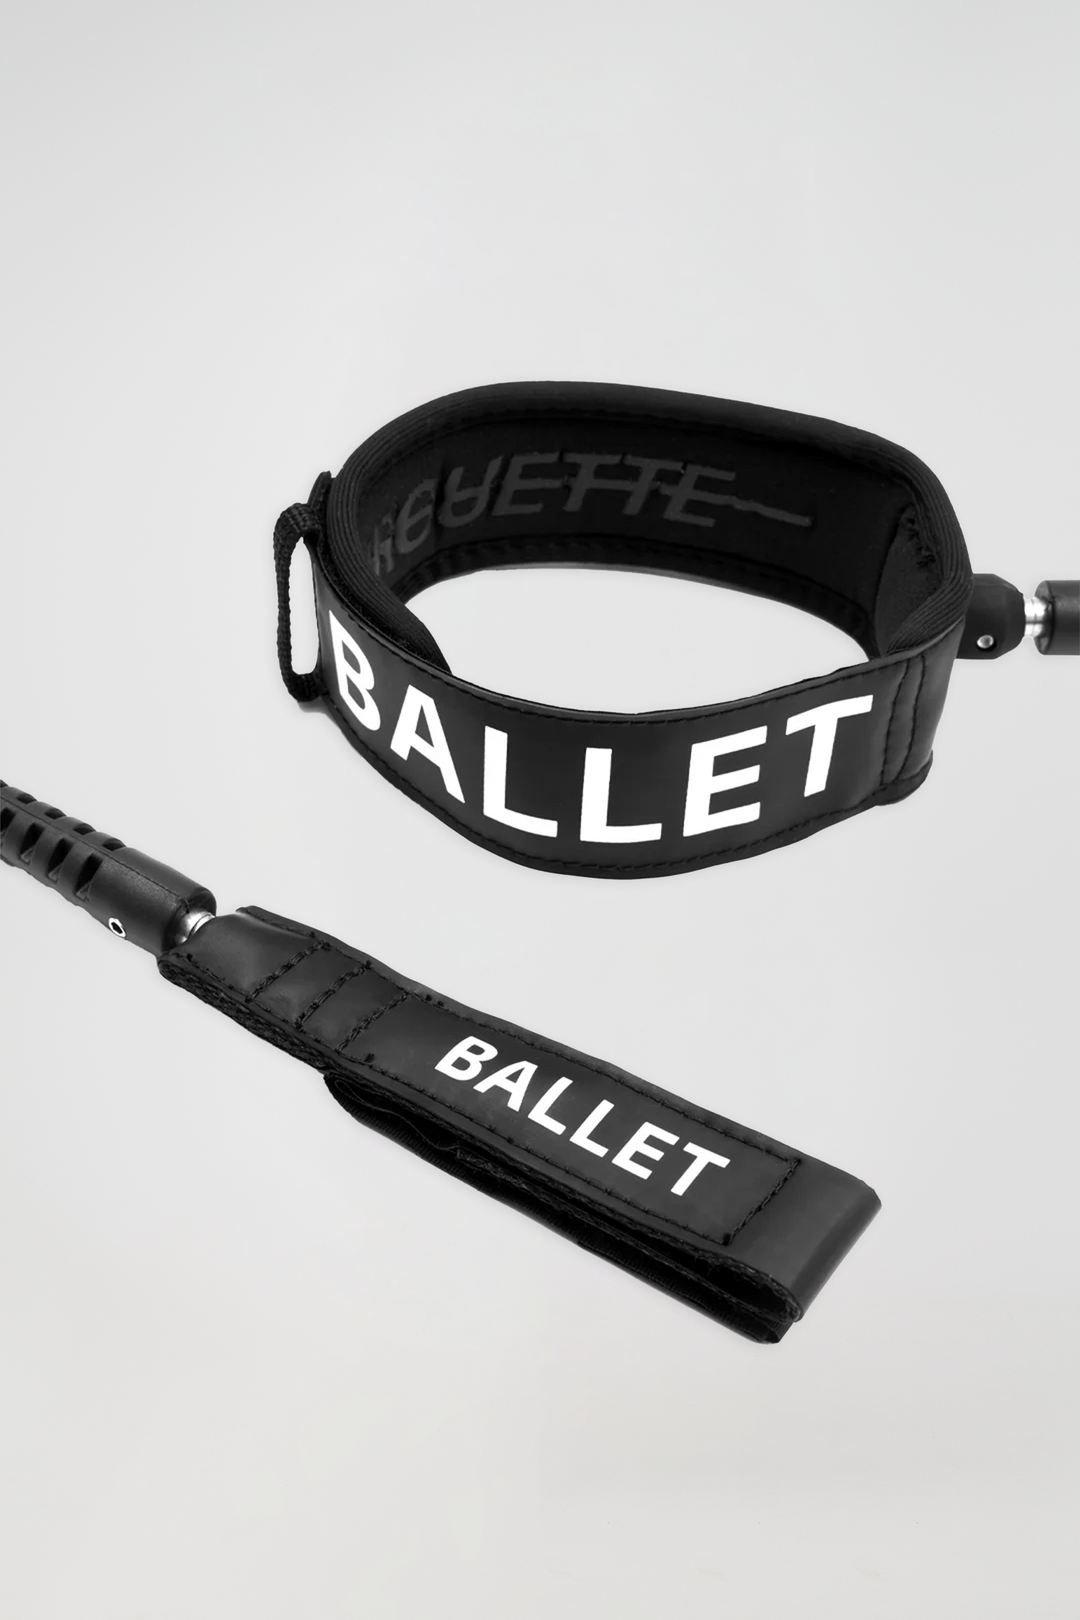 BALLET Pirouette 6ft Pro Leash